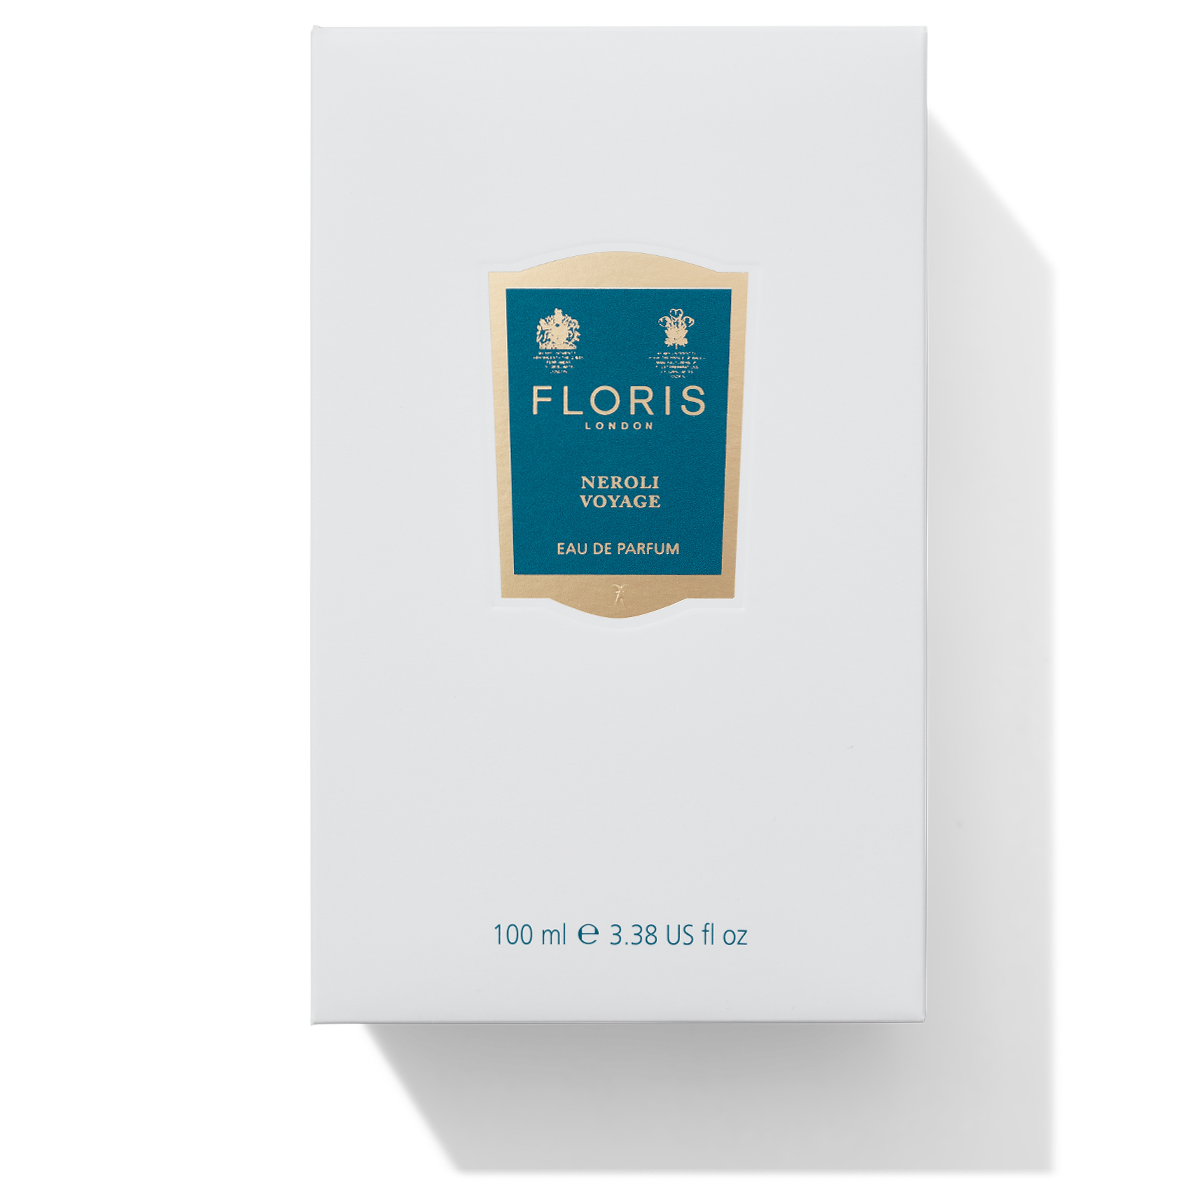 Floris London Neroli Voyage Eau de Parfum box white with blue neroli voyage scent label on